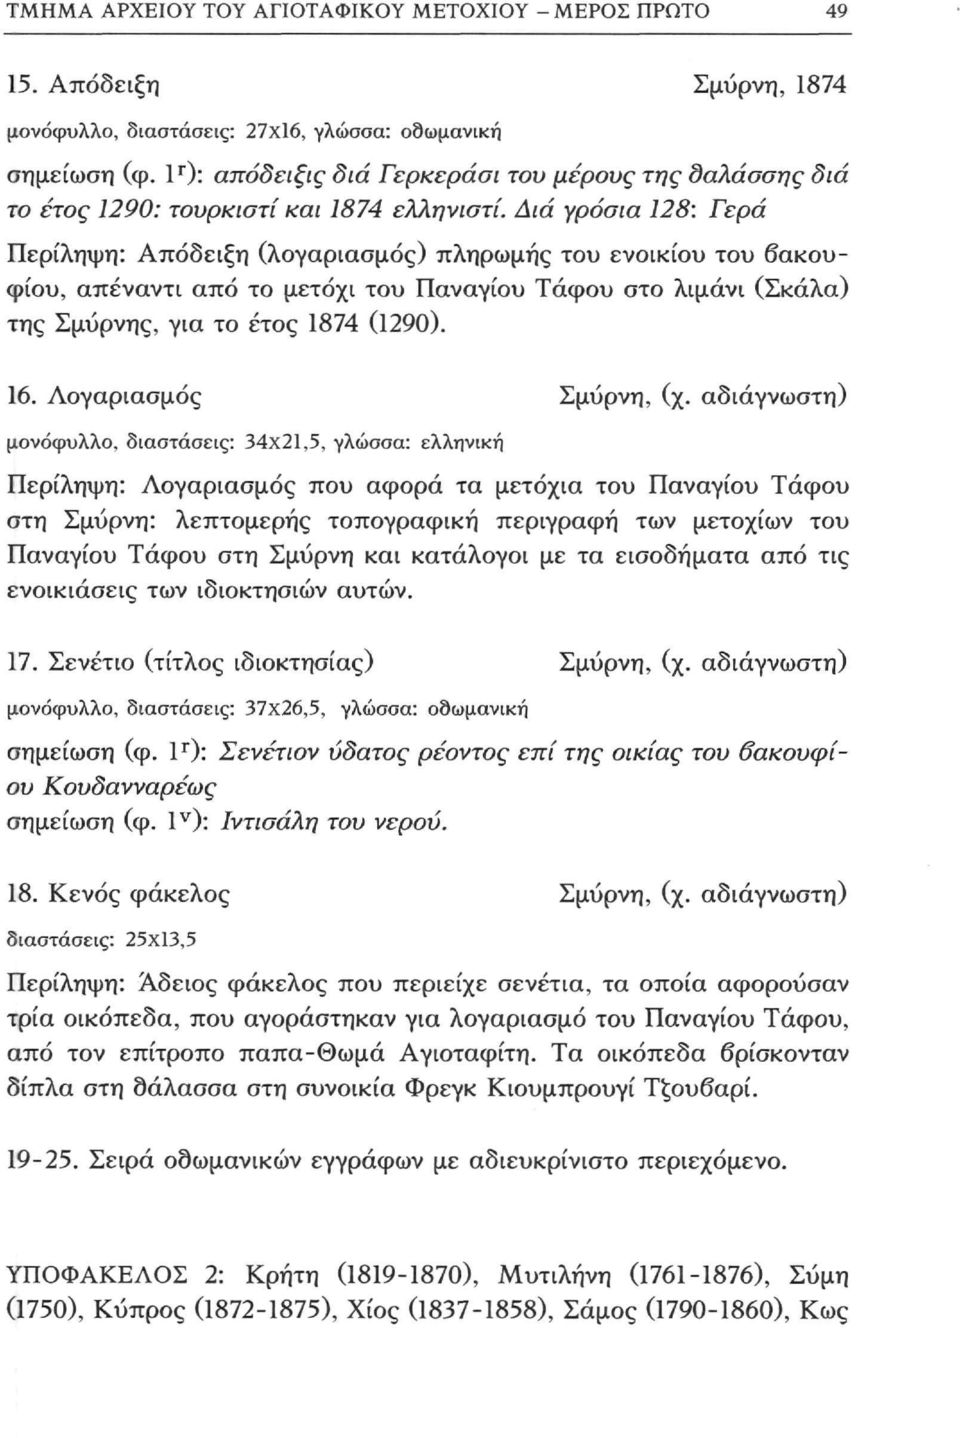 Διά γρόσια 128: Γερά Περίληψη: Απόδειξη (λογαριασμός) πληρωμής του ενοικίου του βακουφίου, απέναντι από το μετόχι του Παναγίου Τάφου στο λιμάνι (Σκάλα) της Σμύρνης, για το έτος 1874 (1290). 16.